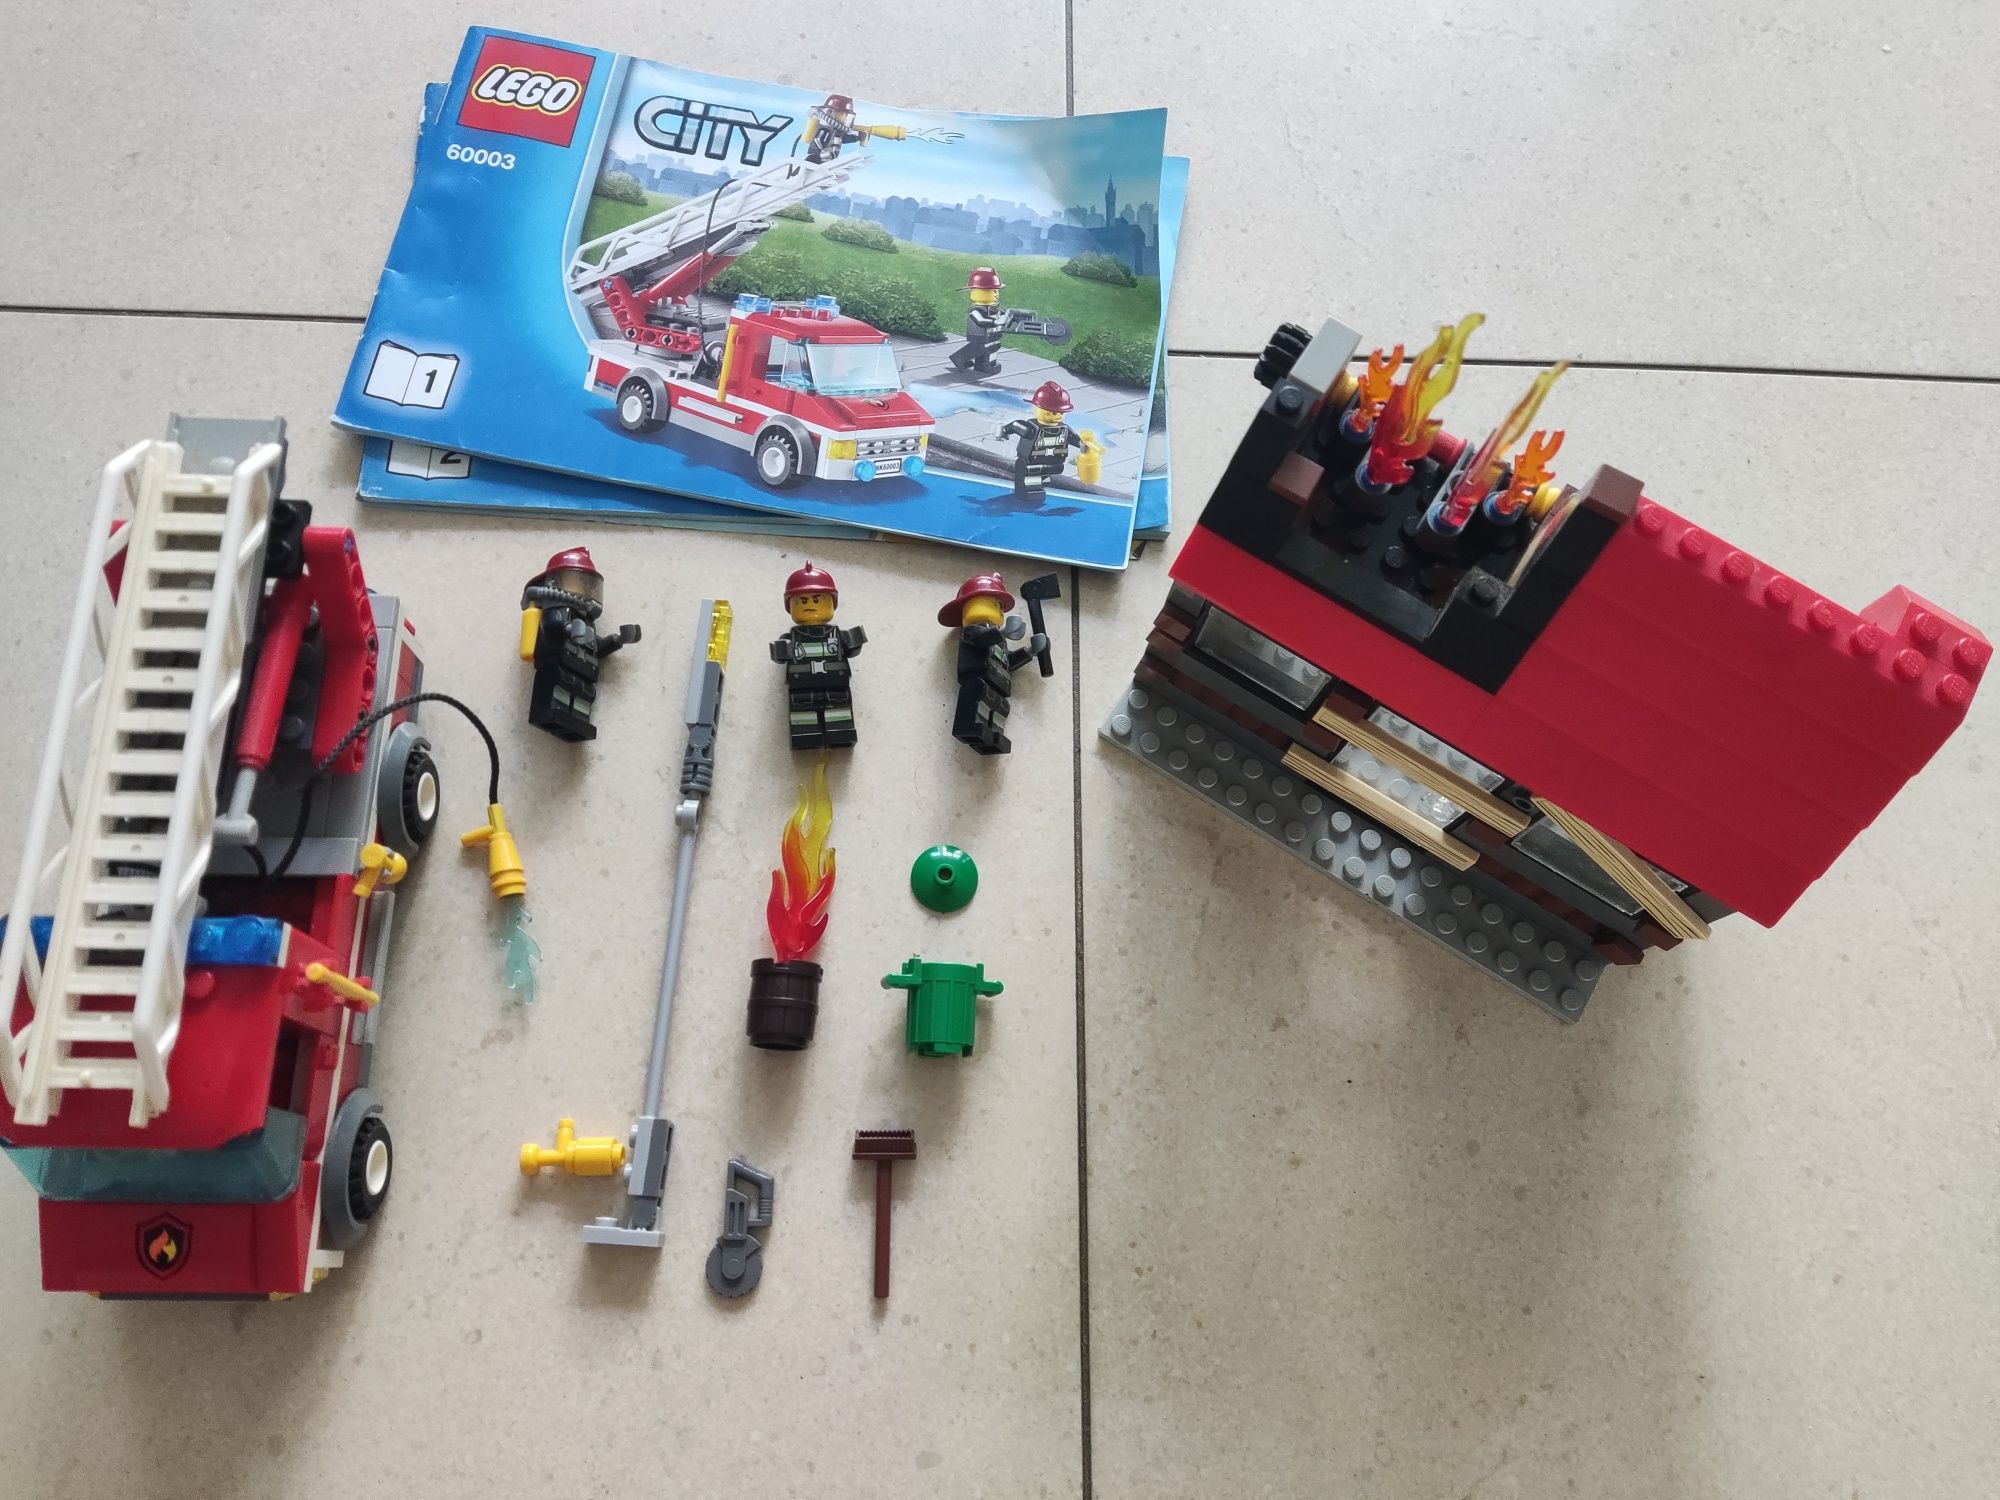 Lego straż pożarna płonący dom 60003